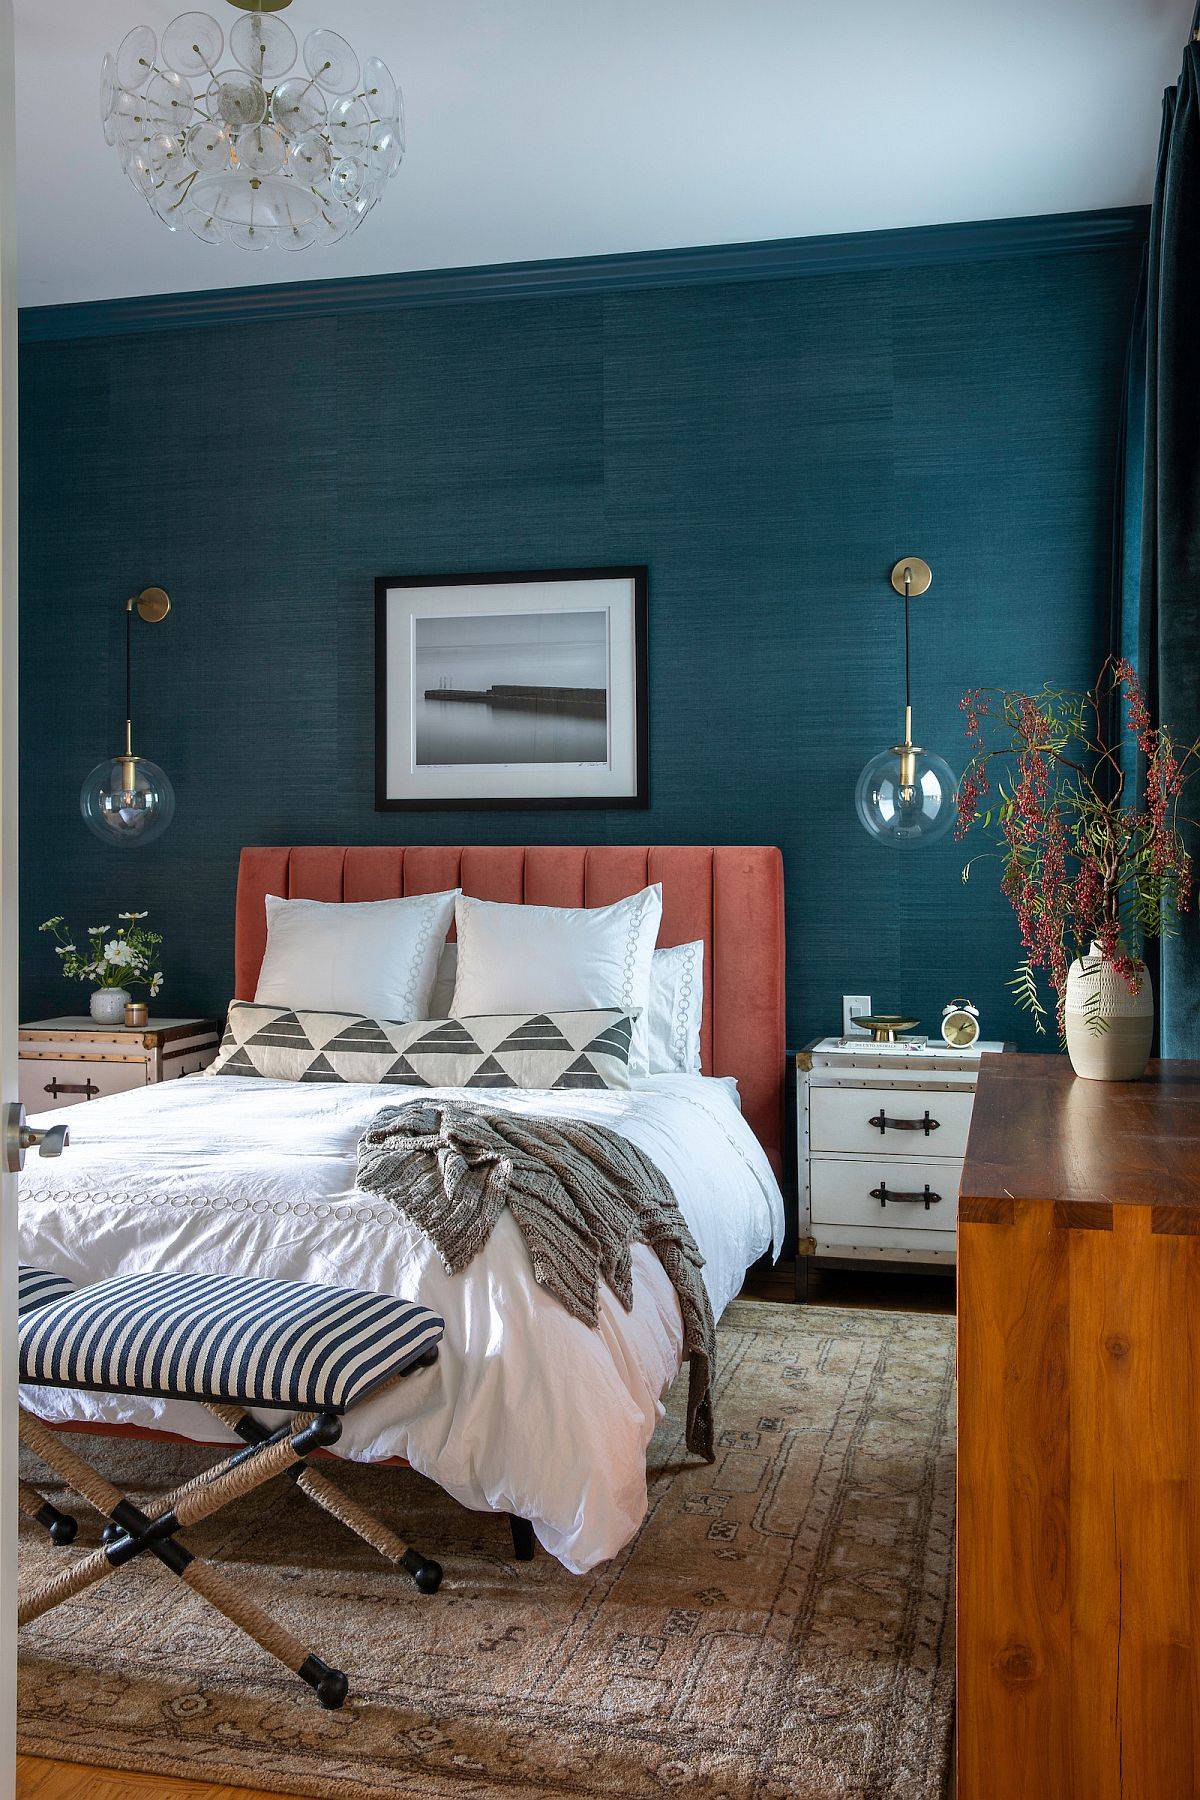 Toàn bộ tường đầu giường sơn màu xanh nước biển tạo cảm giác mát mẻ về mặt thị giác, đồng thời giúp tăng chiều sâu cho phòng ngủ.